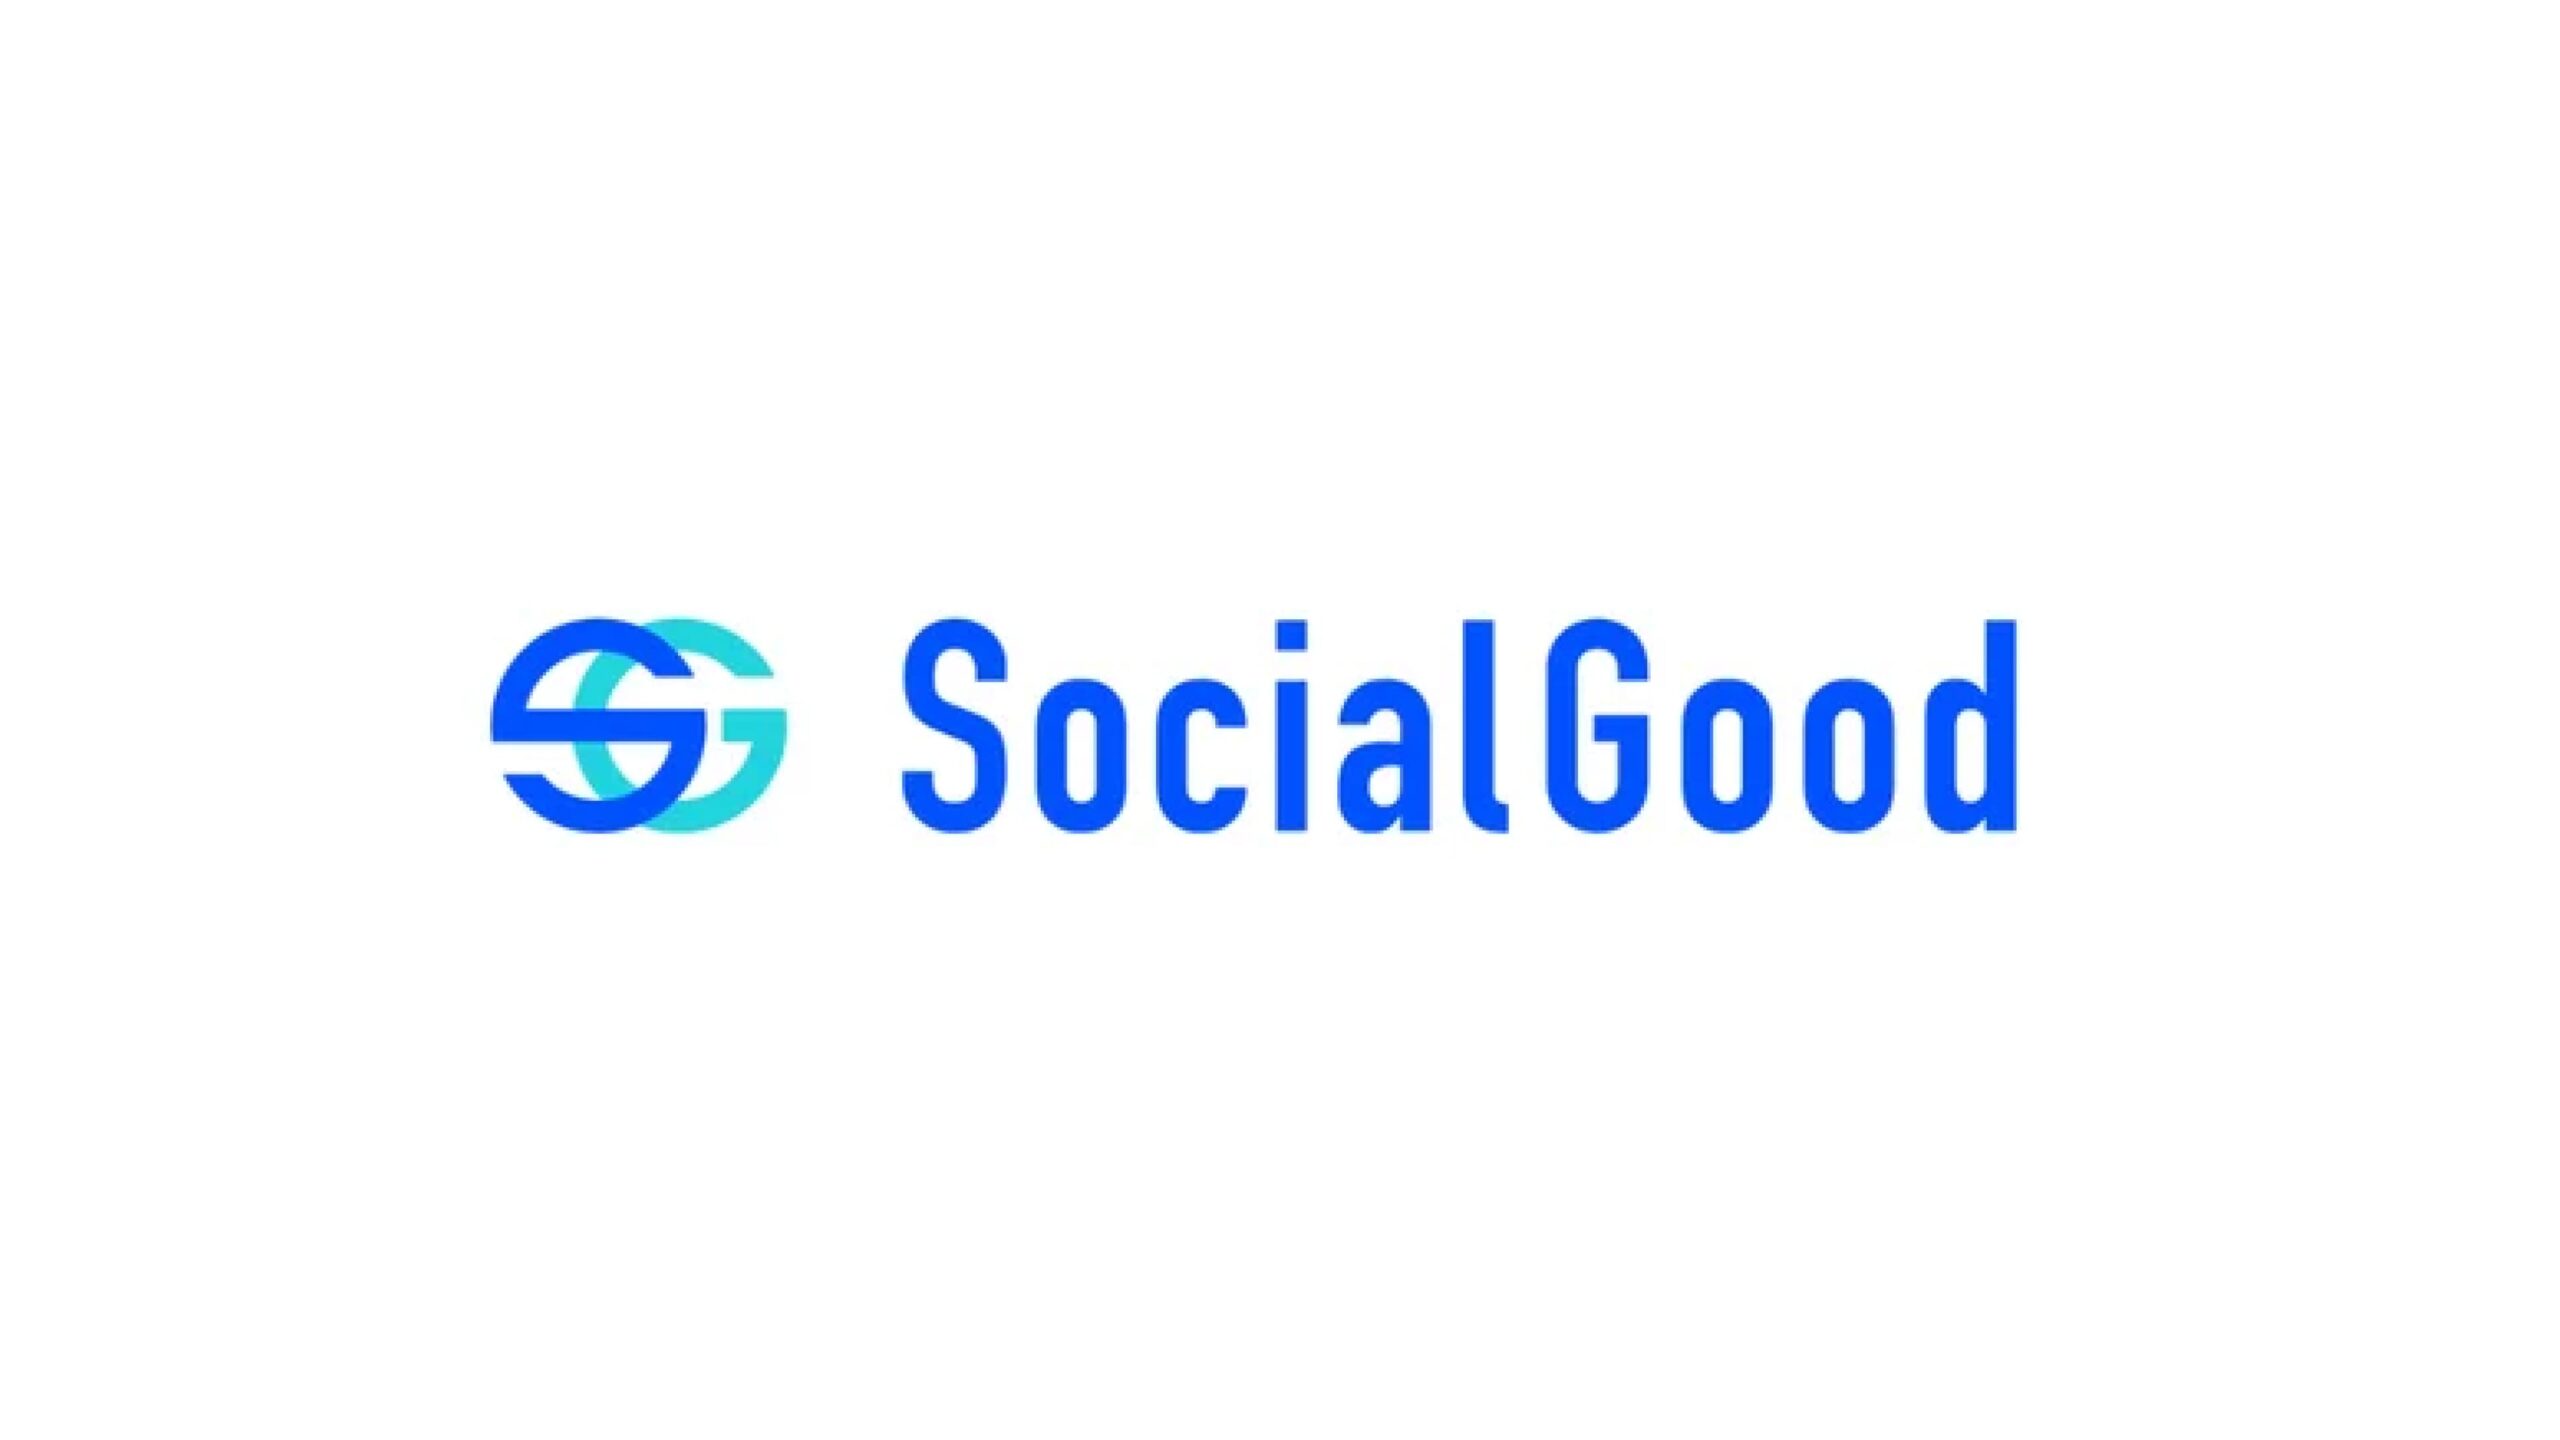 グローバルフィンテック企業SocialGood株式会社が売れるネット広告社より資金調達を実施